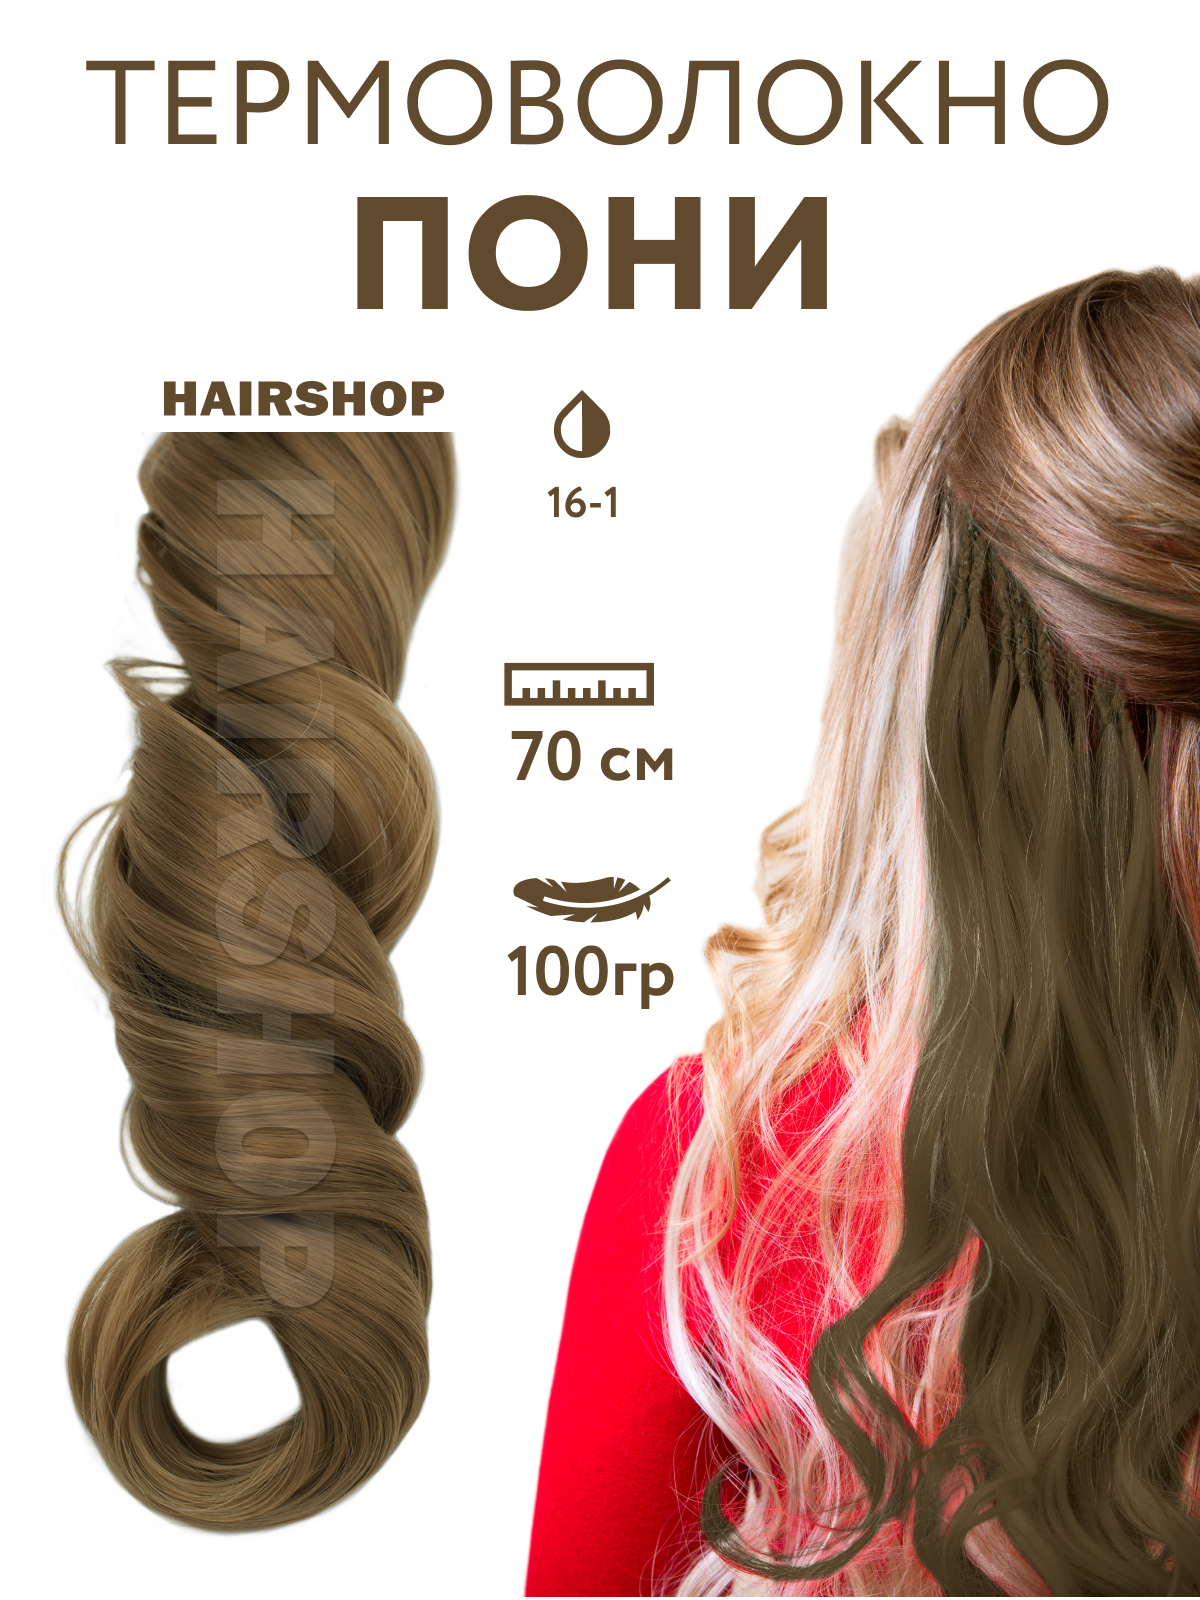 Канекалон Hairshop Пони HairUp для точечного афронаращивания 16-1 Пепельно-русый 1,4м канекалон hairshop пони hairup для точечного афронаращивания с21 сине голубой 1 4м